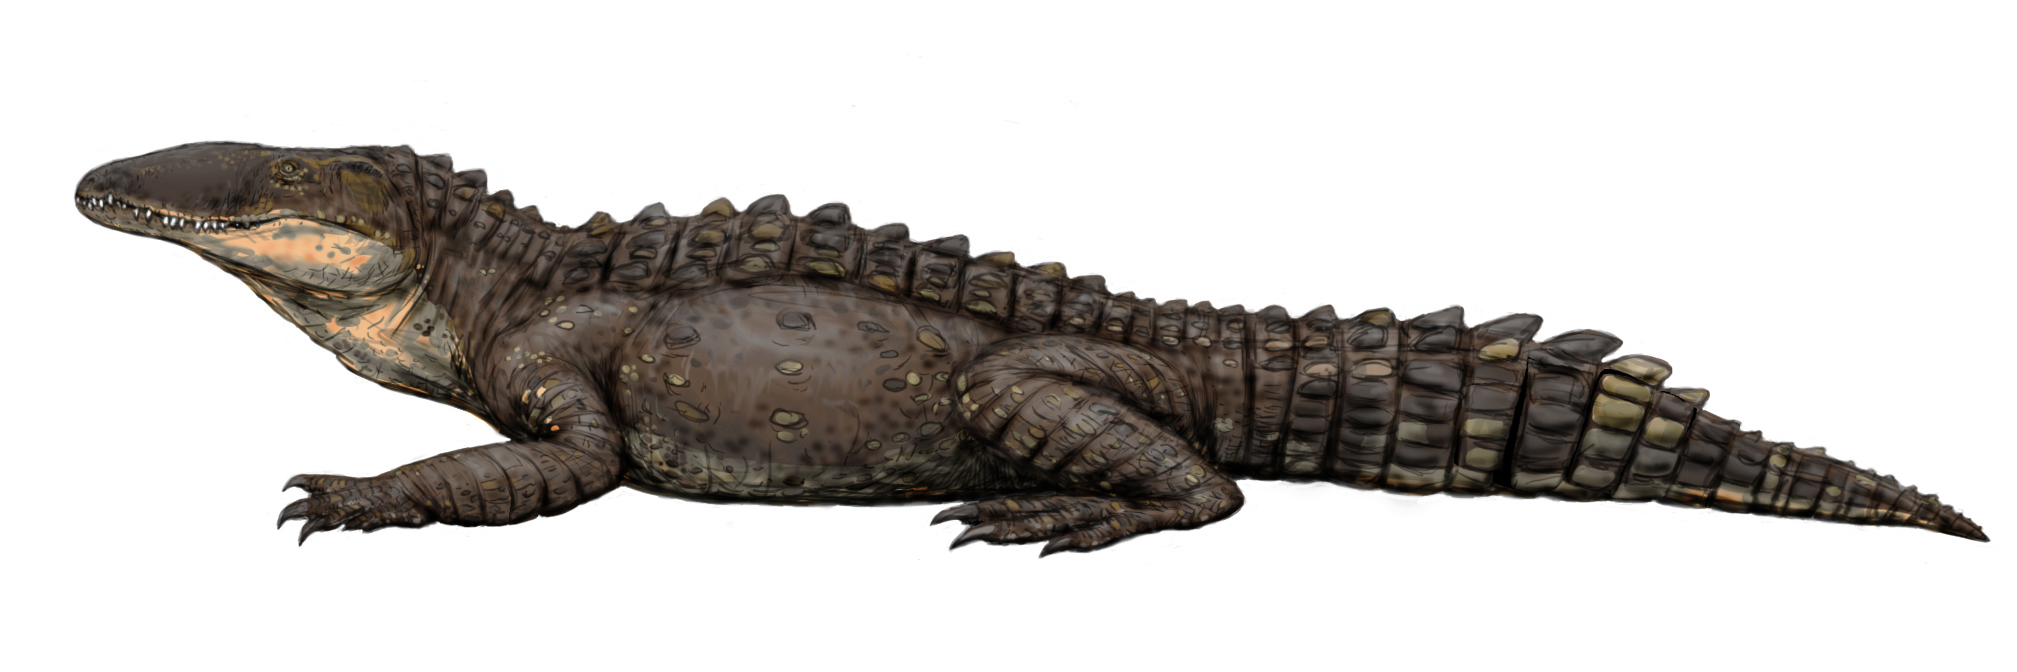 Sebekosuchidi byli menší až velcí krokodylomorfové (krokodýlovití plazi), vzdáleně příbuzní dnešním krokodýlům. Objevili se již koncem křídové periody a byli tedy současníky posledních neptačích dinosaurů. Na rozdíl od nich ale velké vymírání na konc